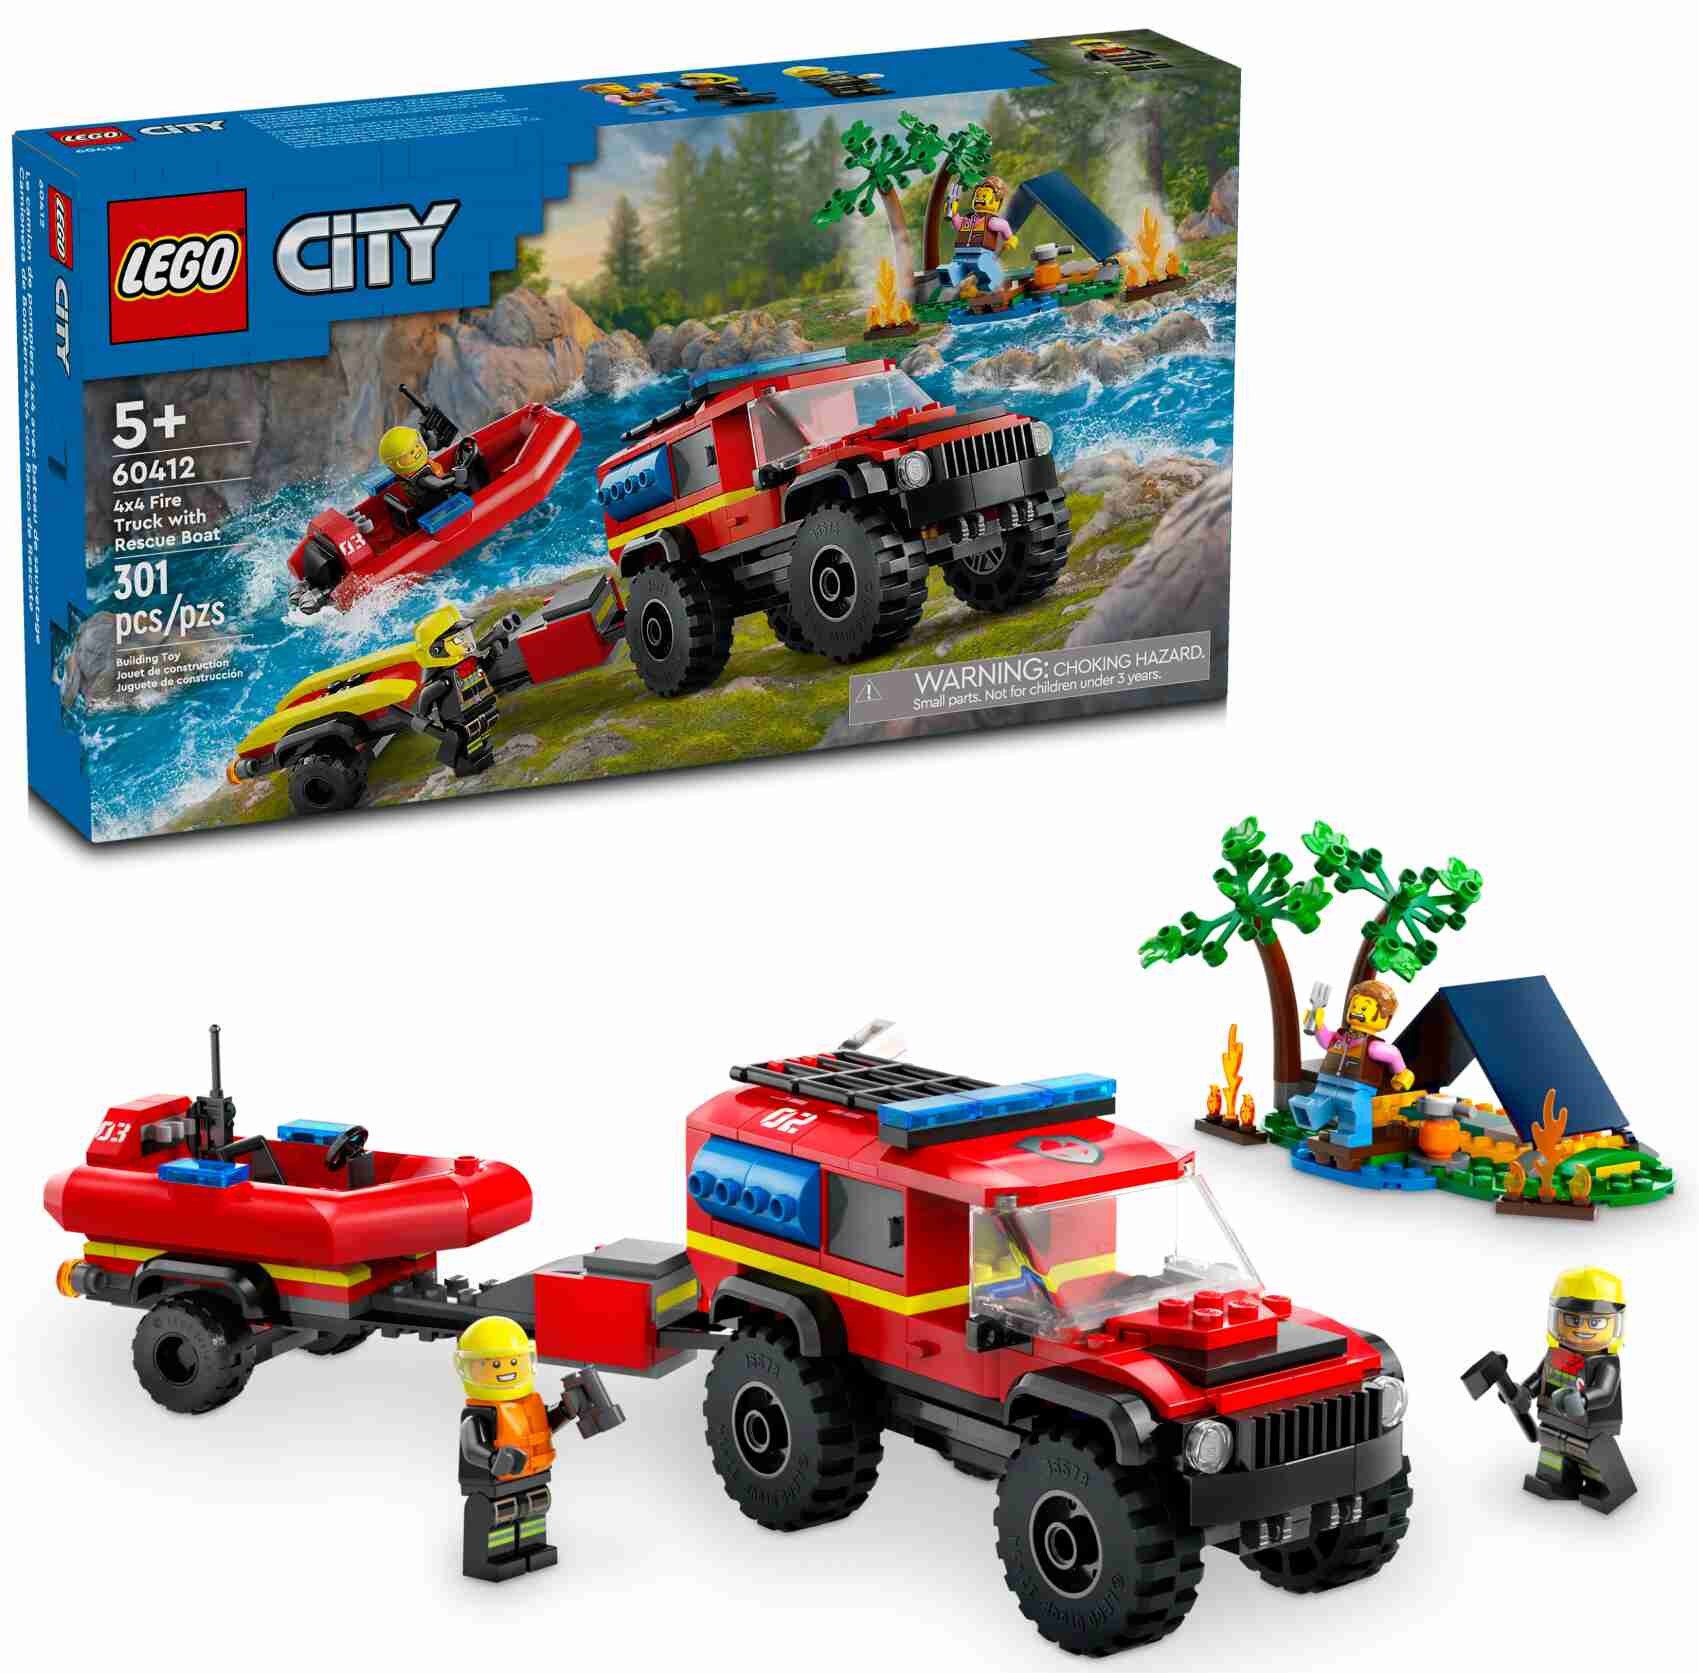 LEGO 60412 City Feuerwehrgeländewagen mit Rettungsboot, 3 Minifiguren